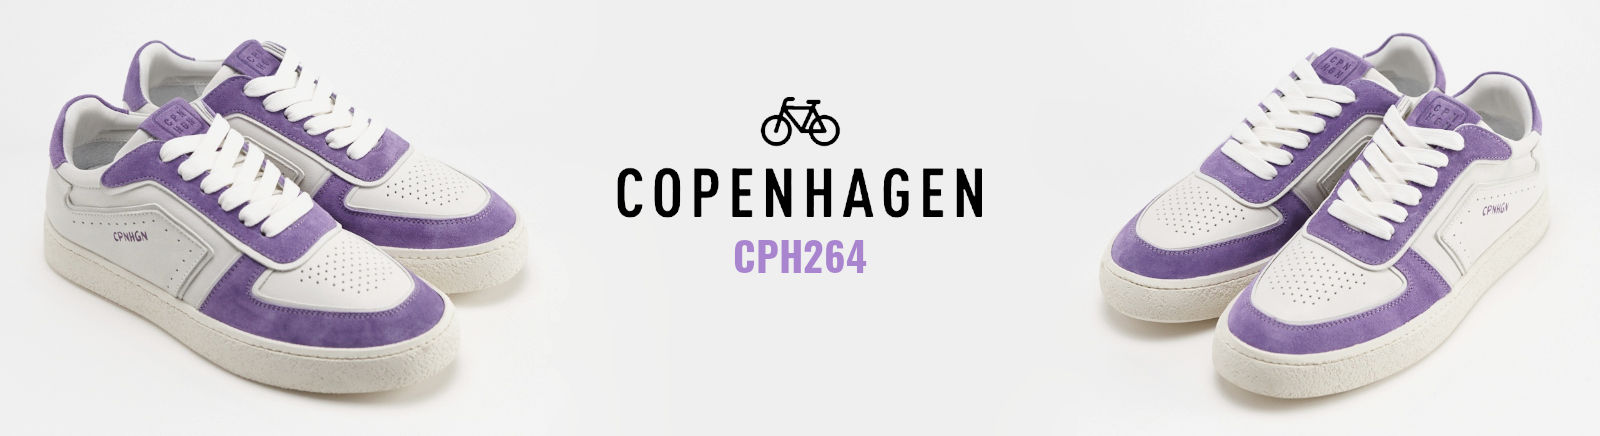 Prange: Copenhagen Schnürrschuhe für Herren online shoppen